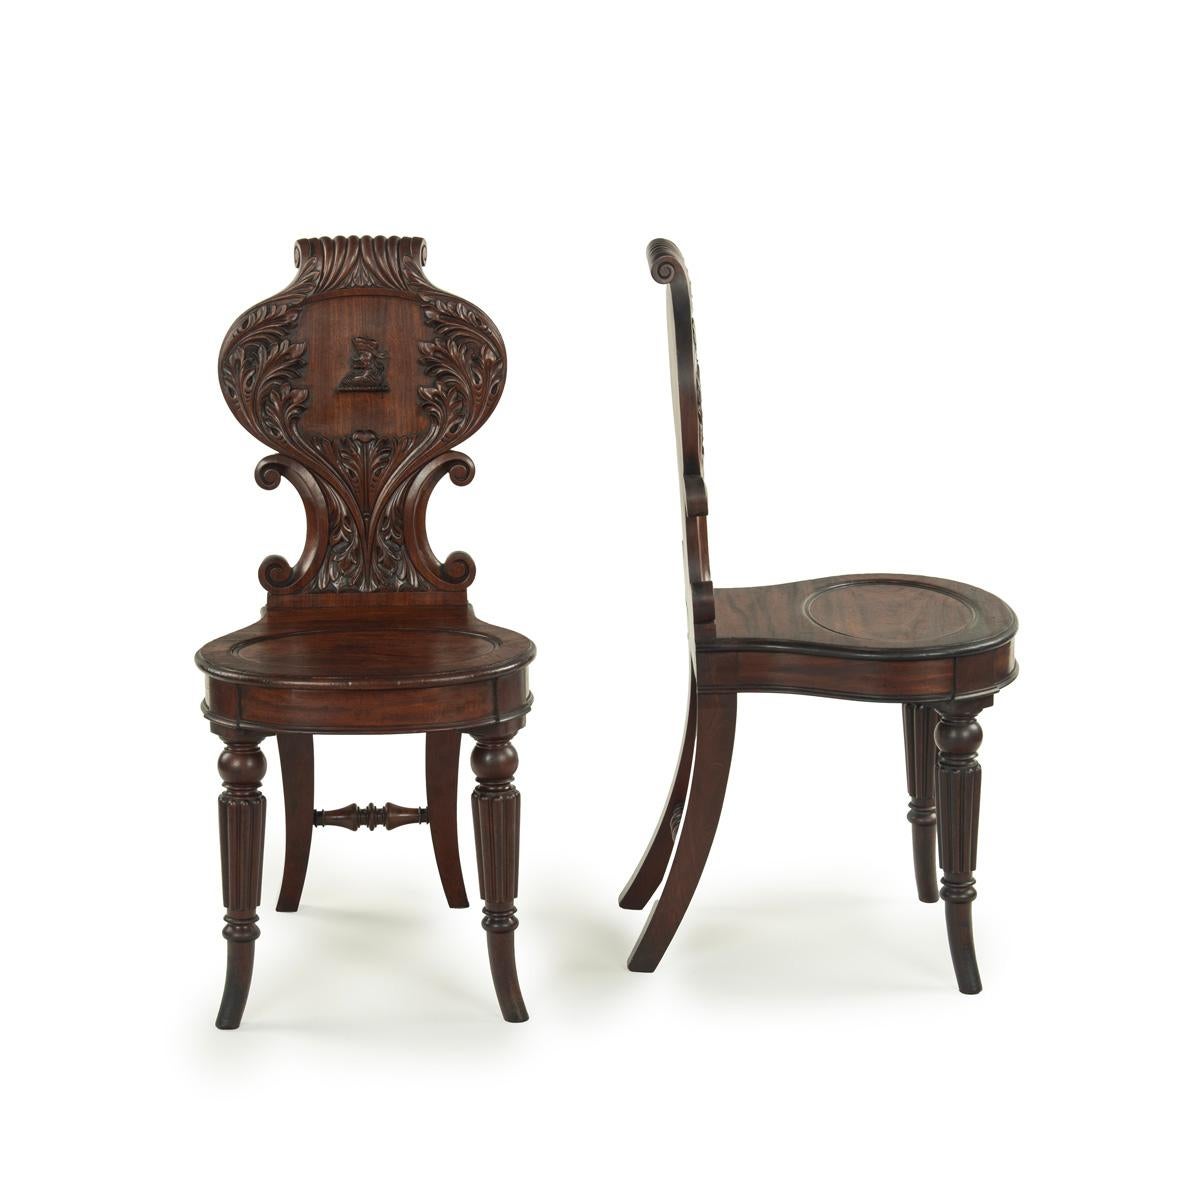 Ein feines Paar Regency Mahagoni Wappen Stühle zugeschrieben Gillows, jeweils mit einem ogee zurück auf C-Rollen und kreisförmigen gewölbten Sitz auf gedreht und reeded outwept Vorderbeine angehoben, die rechteckigen Abschnitt zurück Beine durch